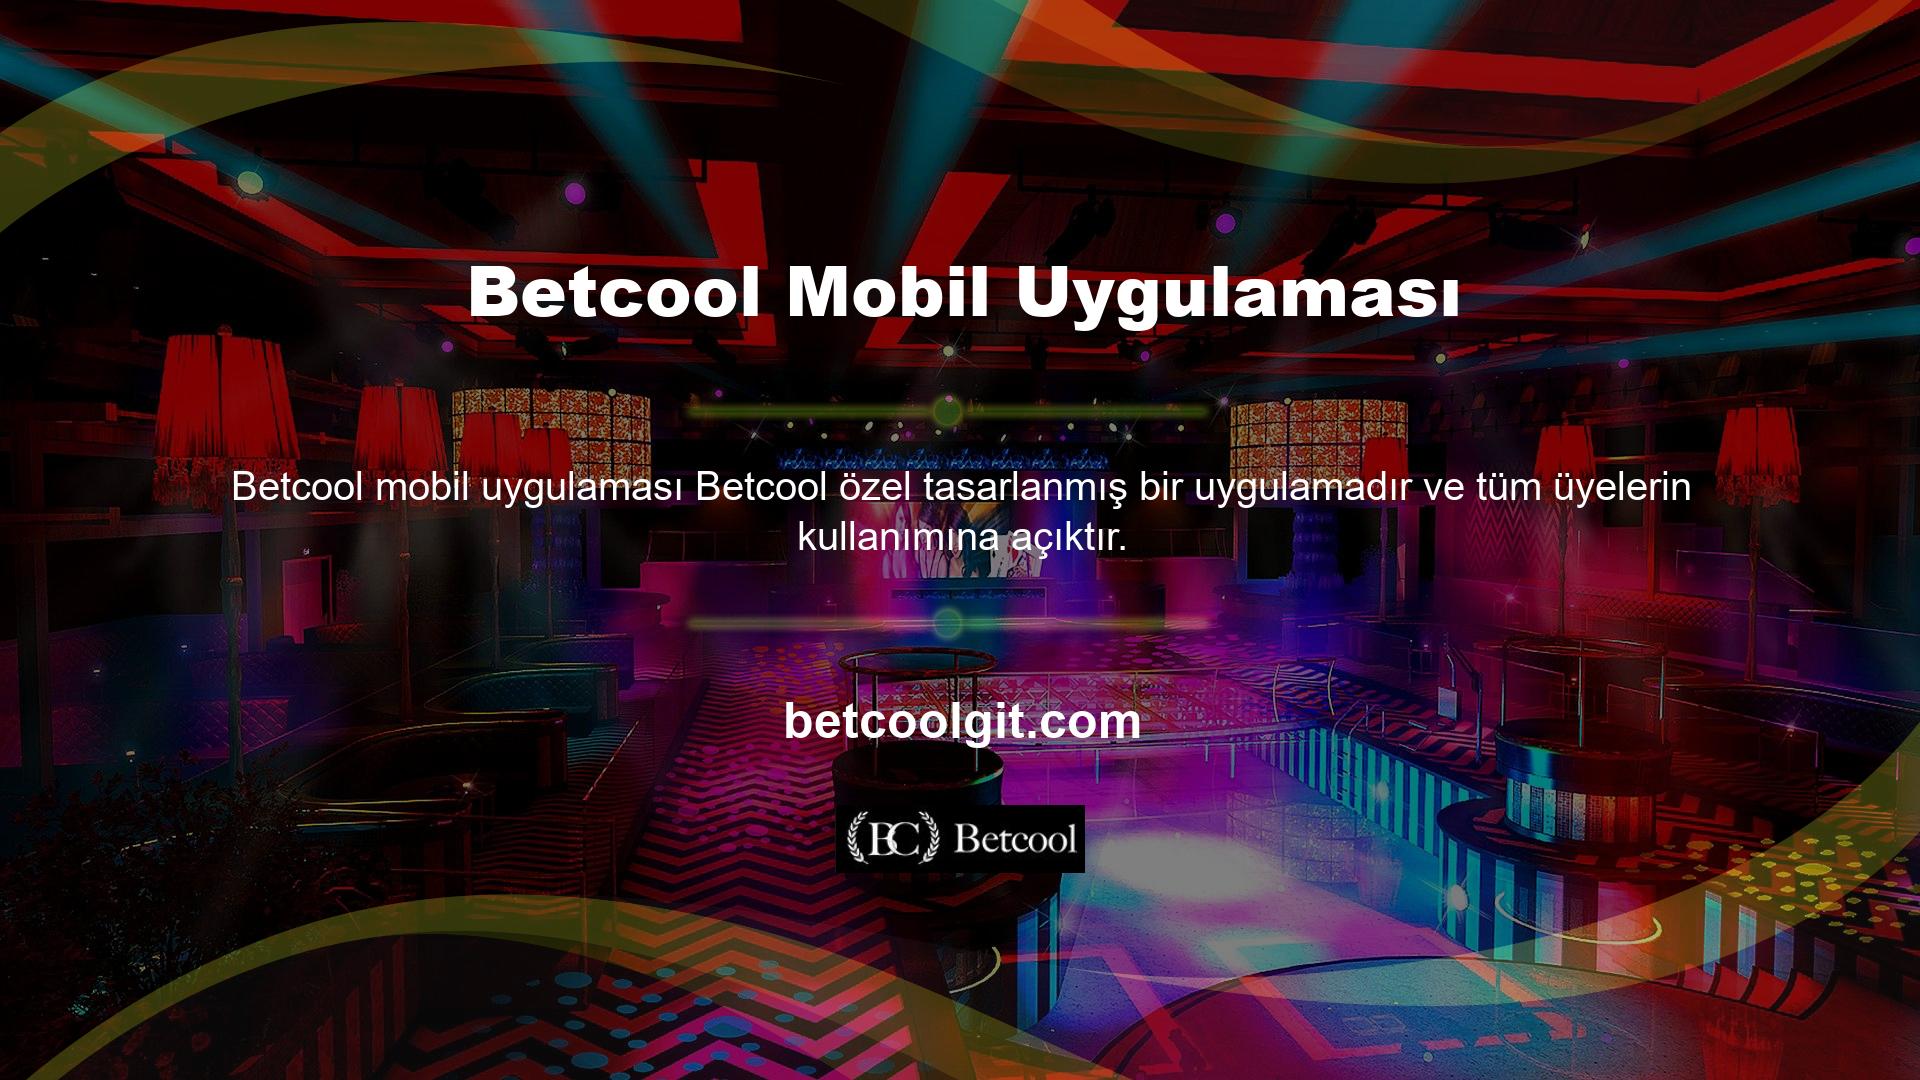 Oyun severler Betcool mobil uygulamasına online mağaza üzerinden kolayca ulaşabiliyor ve cep telefonlarına indirerek daha iyi hizmet alabiliyorlar